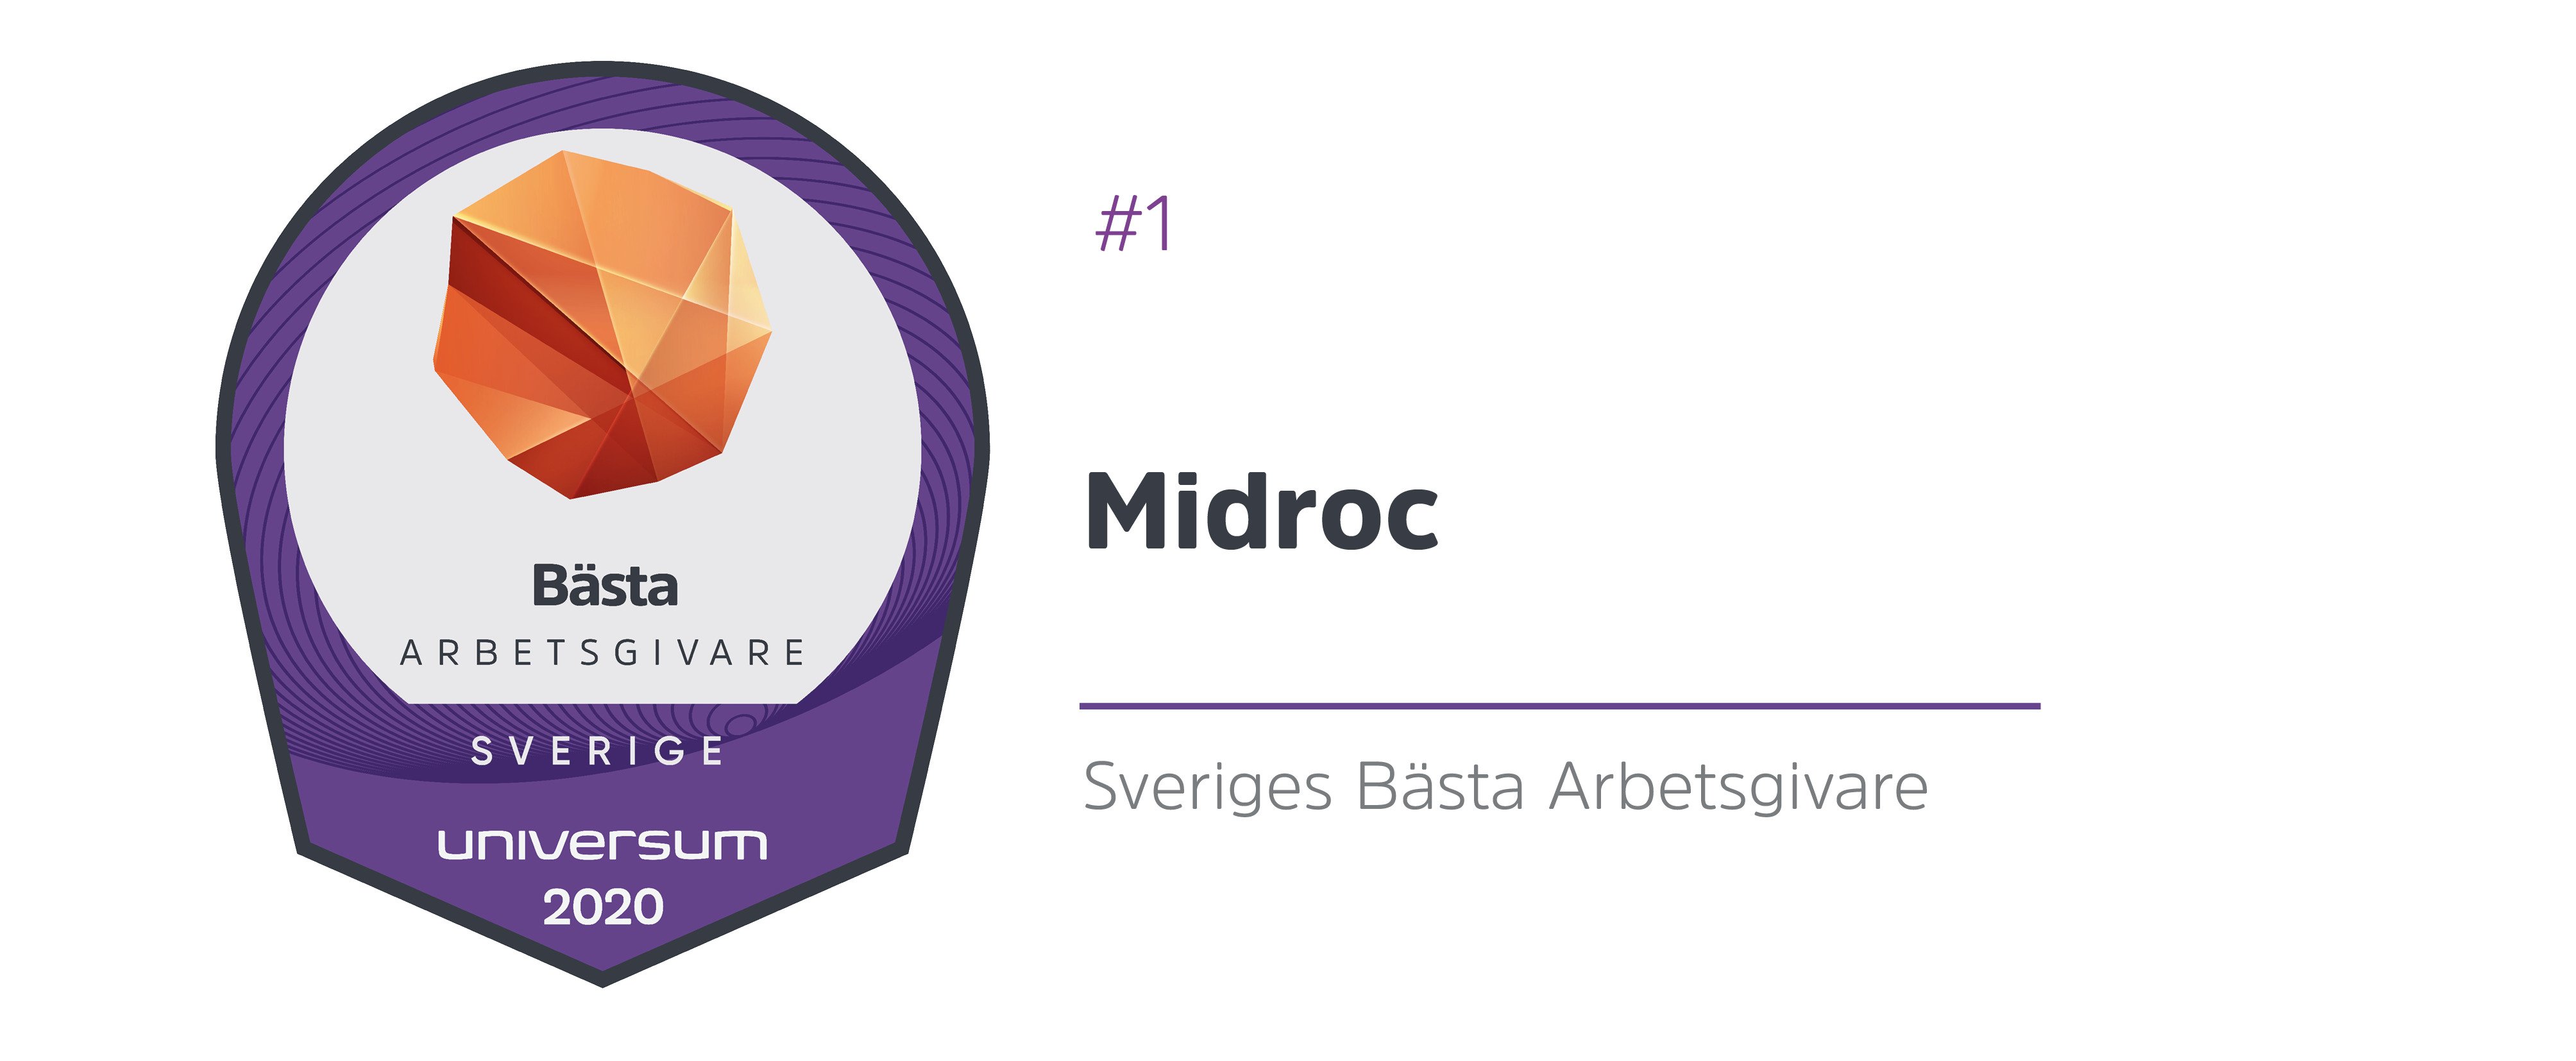 Midroc Sveriges Bästa Arbetsgivare 2020